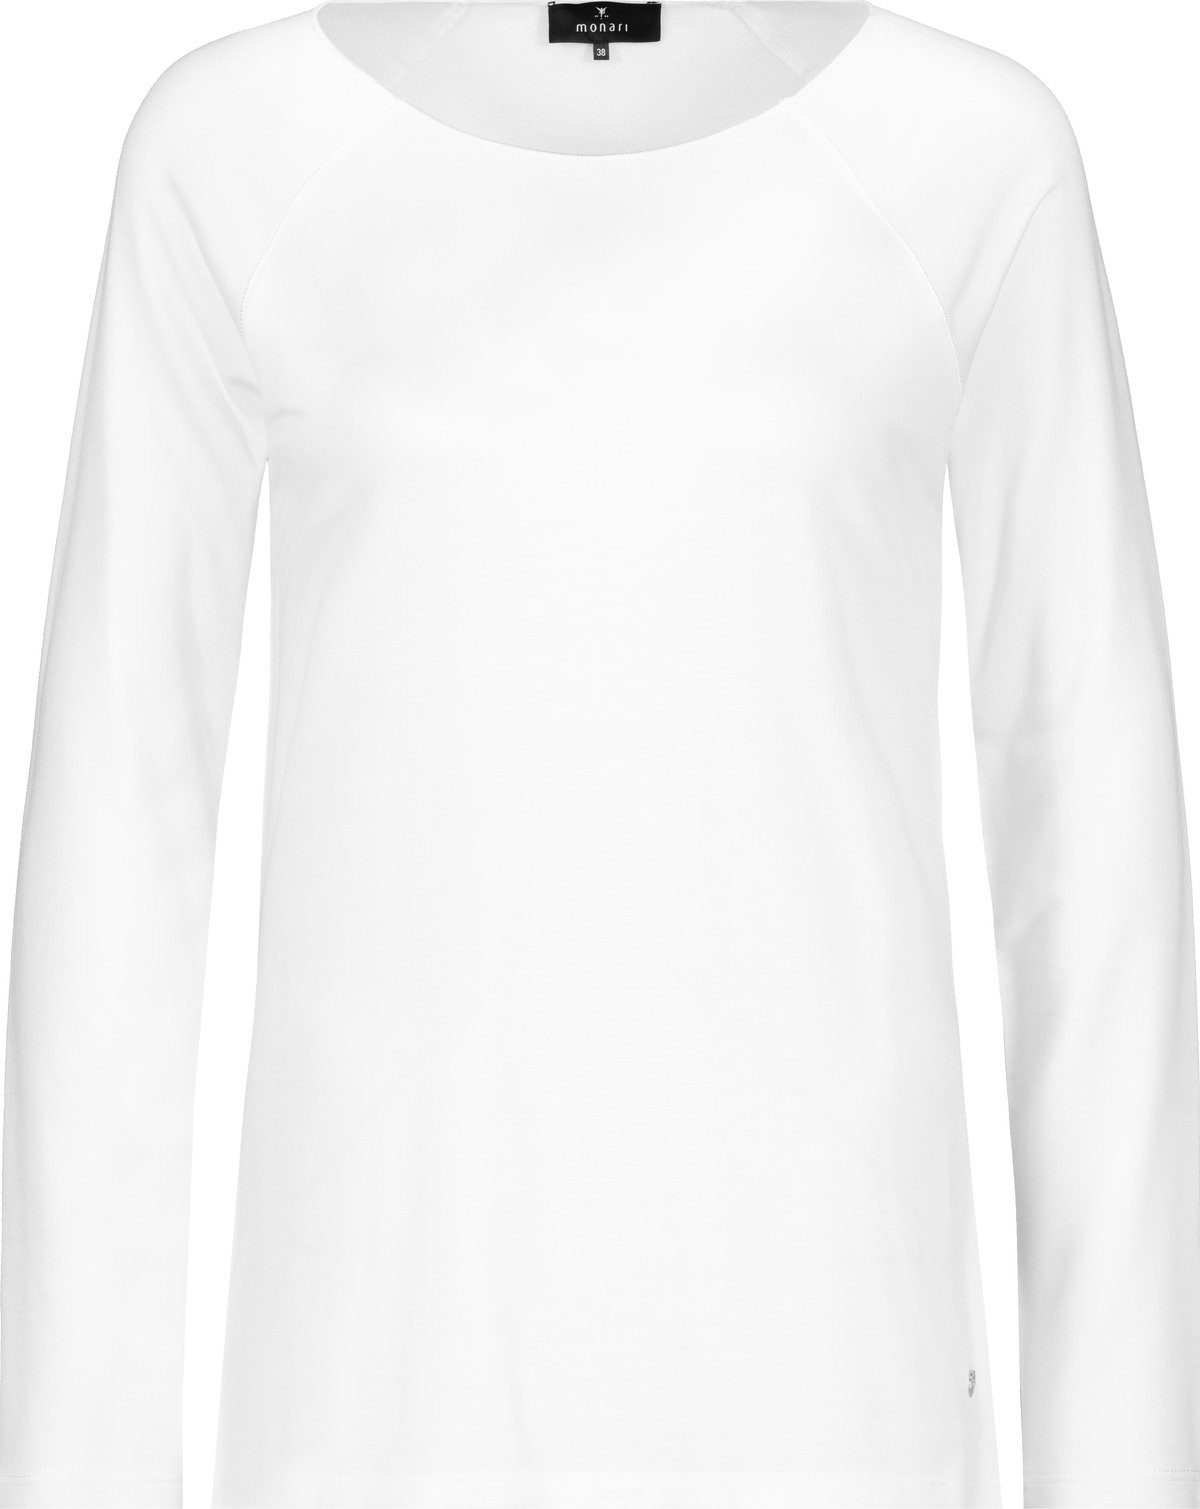 off-white 102 Monari T-Shirt